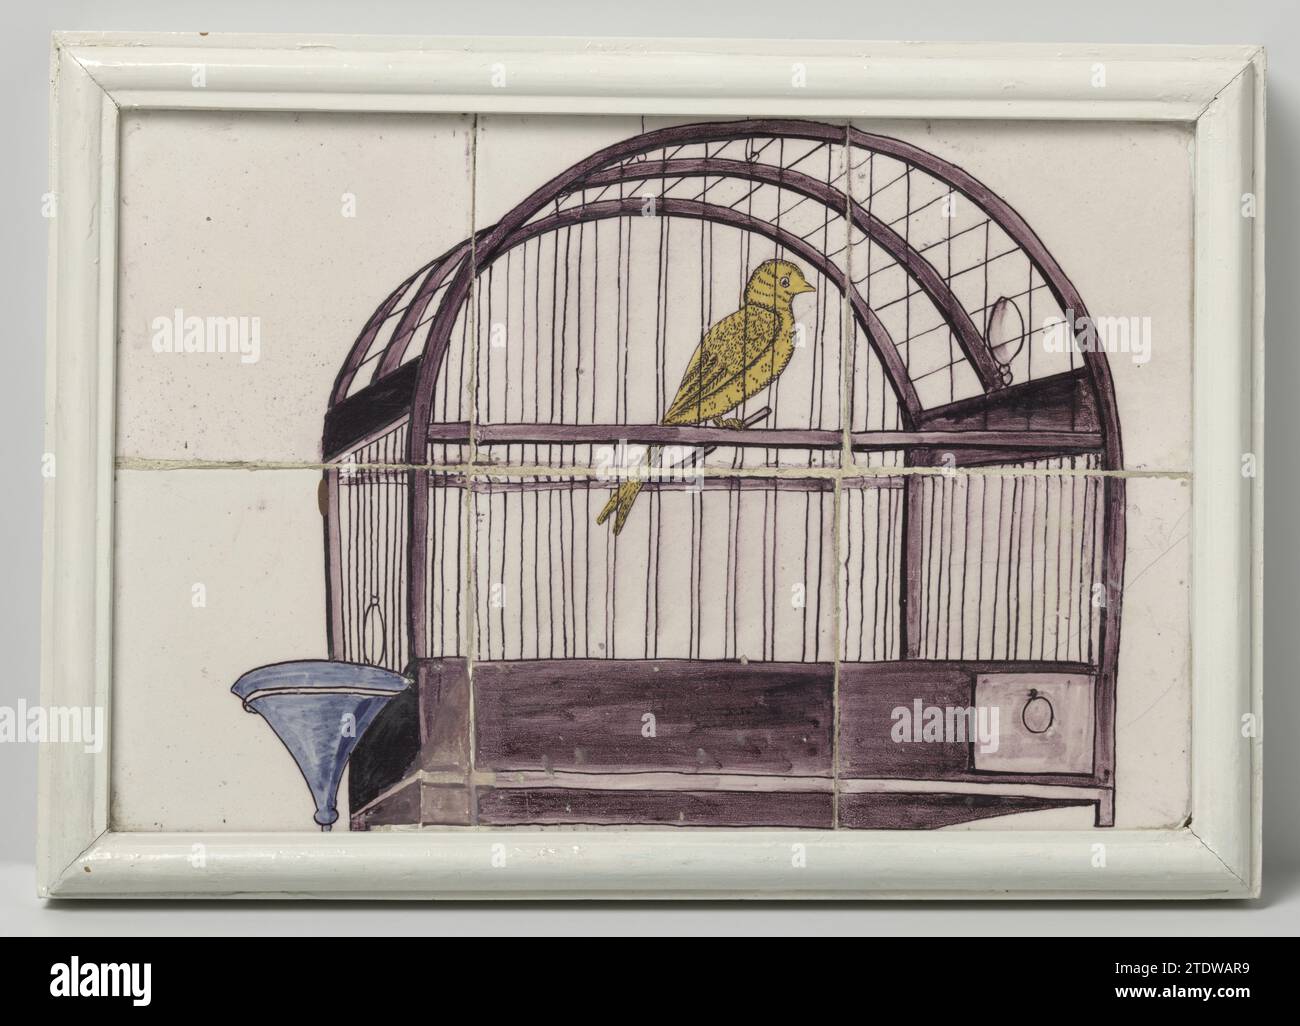 Tableau piastrelle, dipinto con una rappresentazione di una gabbia per uccelli, c. 1750 - c. 1800 tableau piastrelle di sei piastrelle (2x3), dipinte in viola, blu e giallo con una rappresentazione di una gabbia per uccelli con una ciotola per bere. Olanda . Tegole di sei piastrelle (2x3), dipinte in viola, blu e giallo con una rappresentazione di una gabbia per uccelli con una ciotola per bere. Olanda . Foto Stock